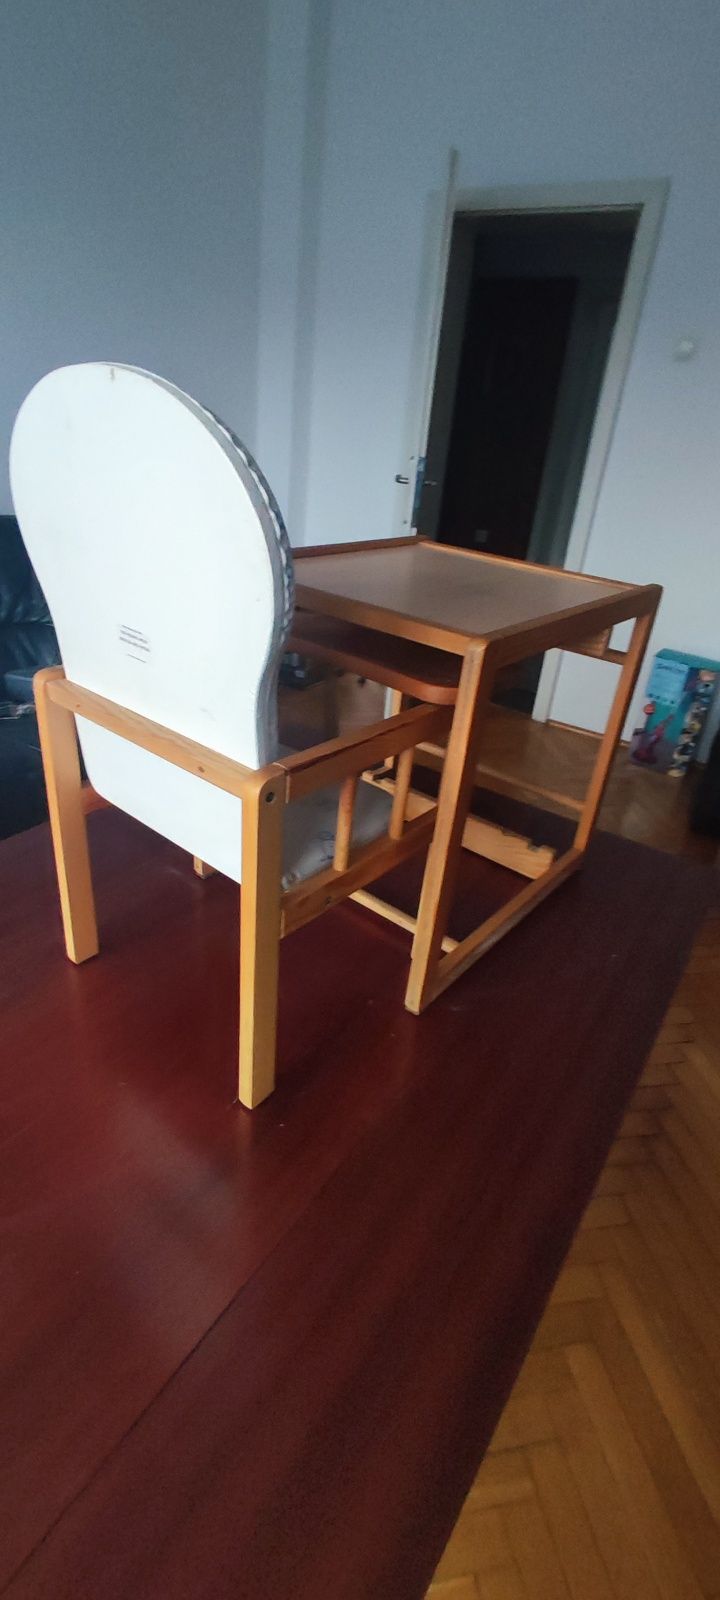 Krzesełko do karmienia, malowania 2w1